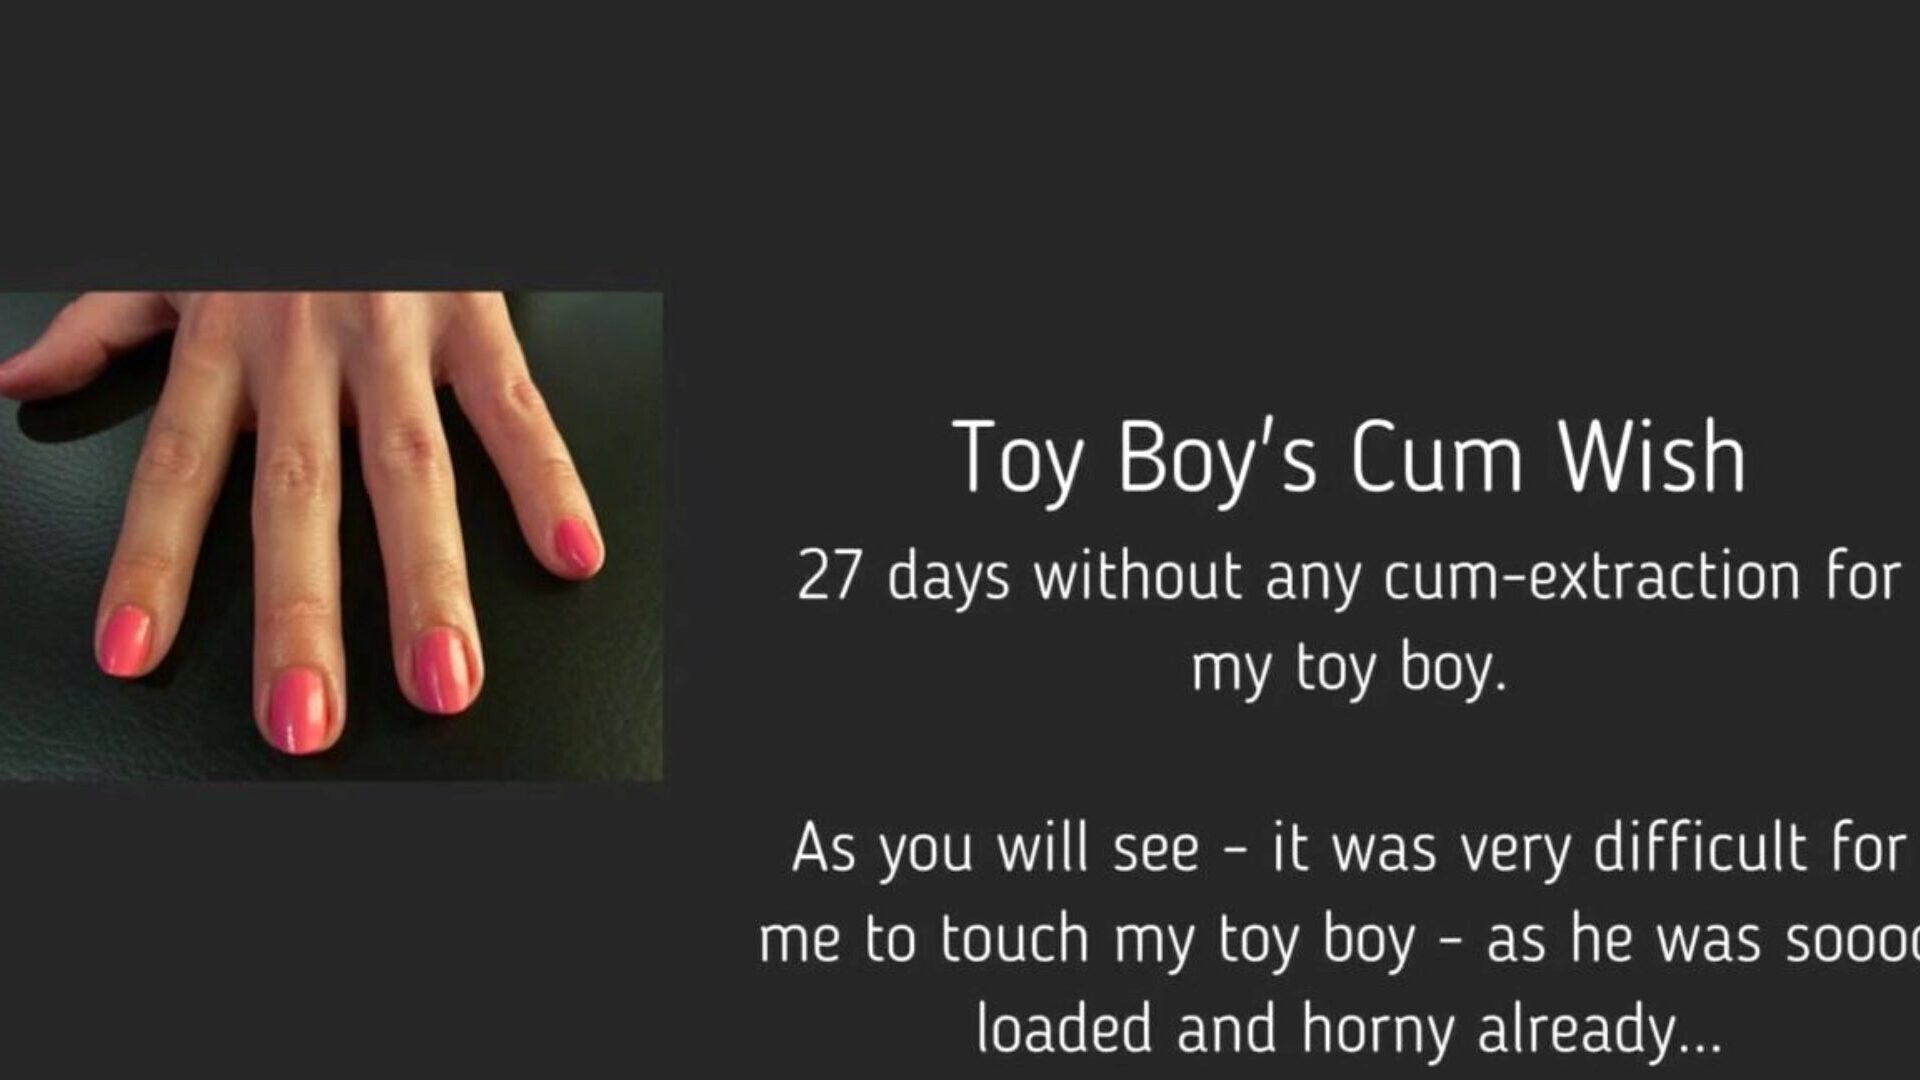 toy boy's cum wish: free femdom handjob hd porn video 95 titta på toy boy's cum wish tube orgie film gratis på xhamster, med den sexigaste uppskattningen av femdom handjob bel ami cum & tube boy hd porno film scenspel